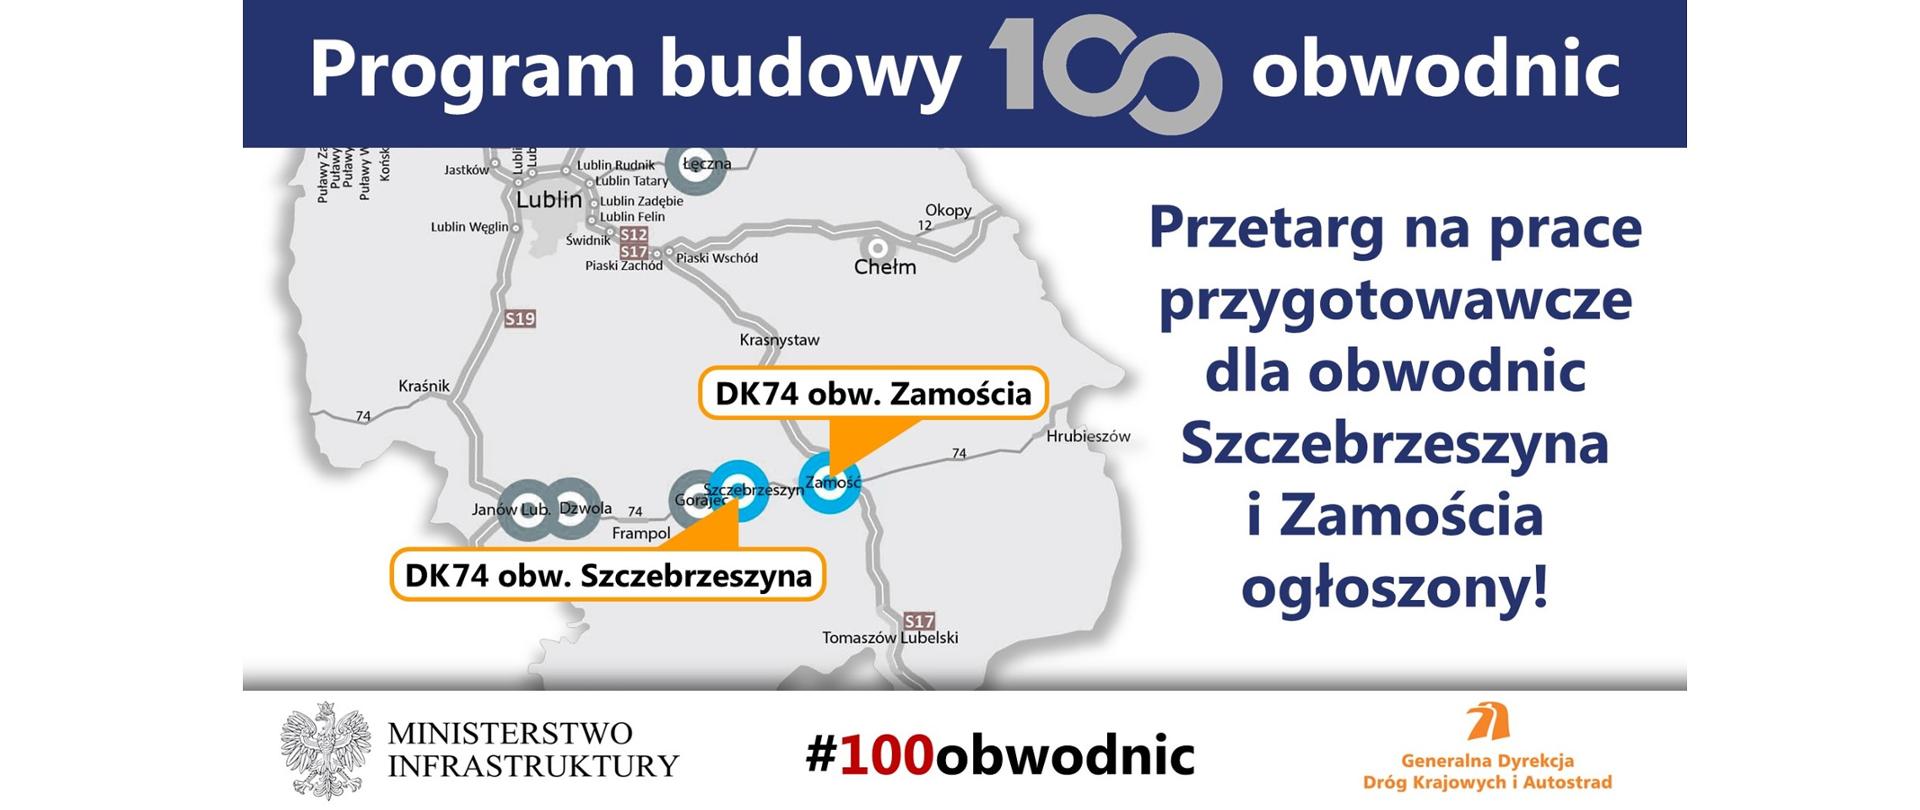 Rusza przetarg na dokumentację dla obwodnic Szczebrzeszyna i Zamościa - infografika